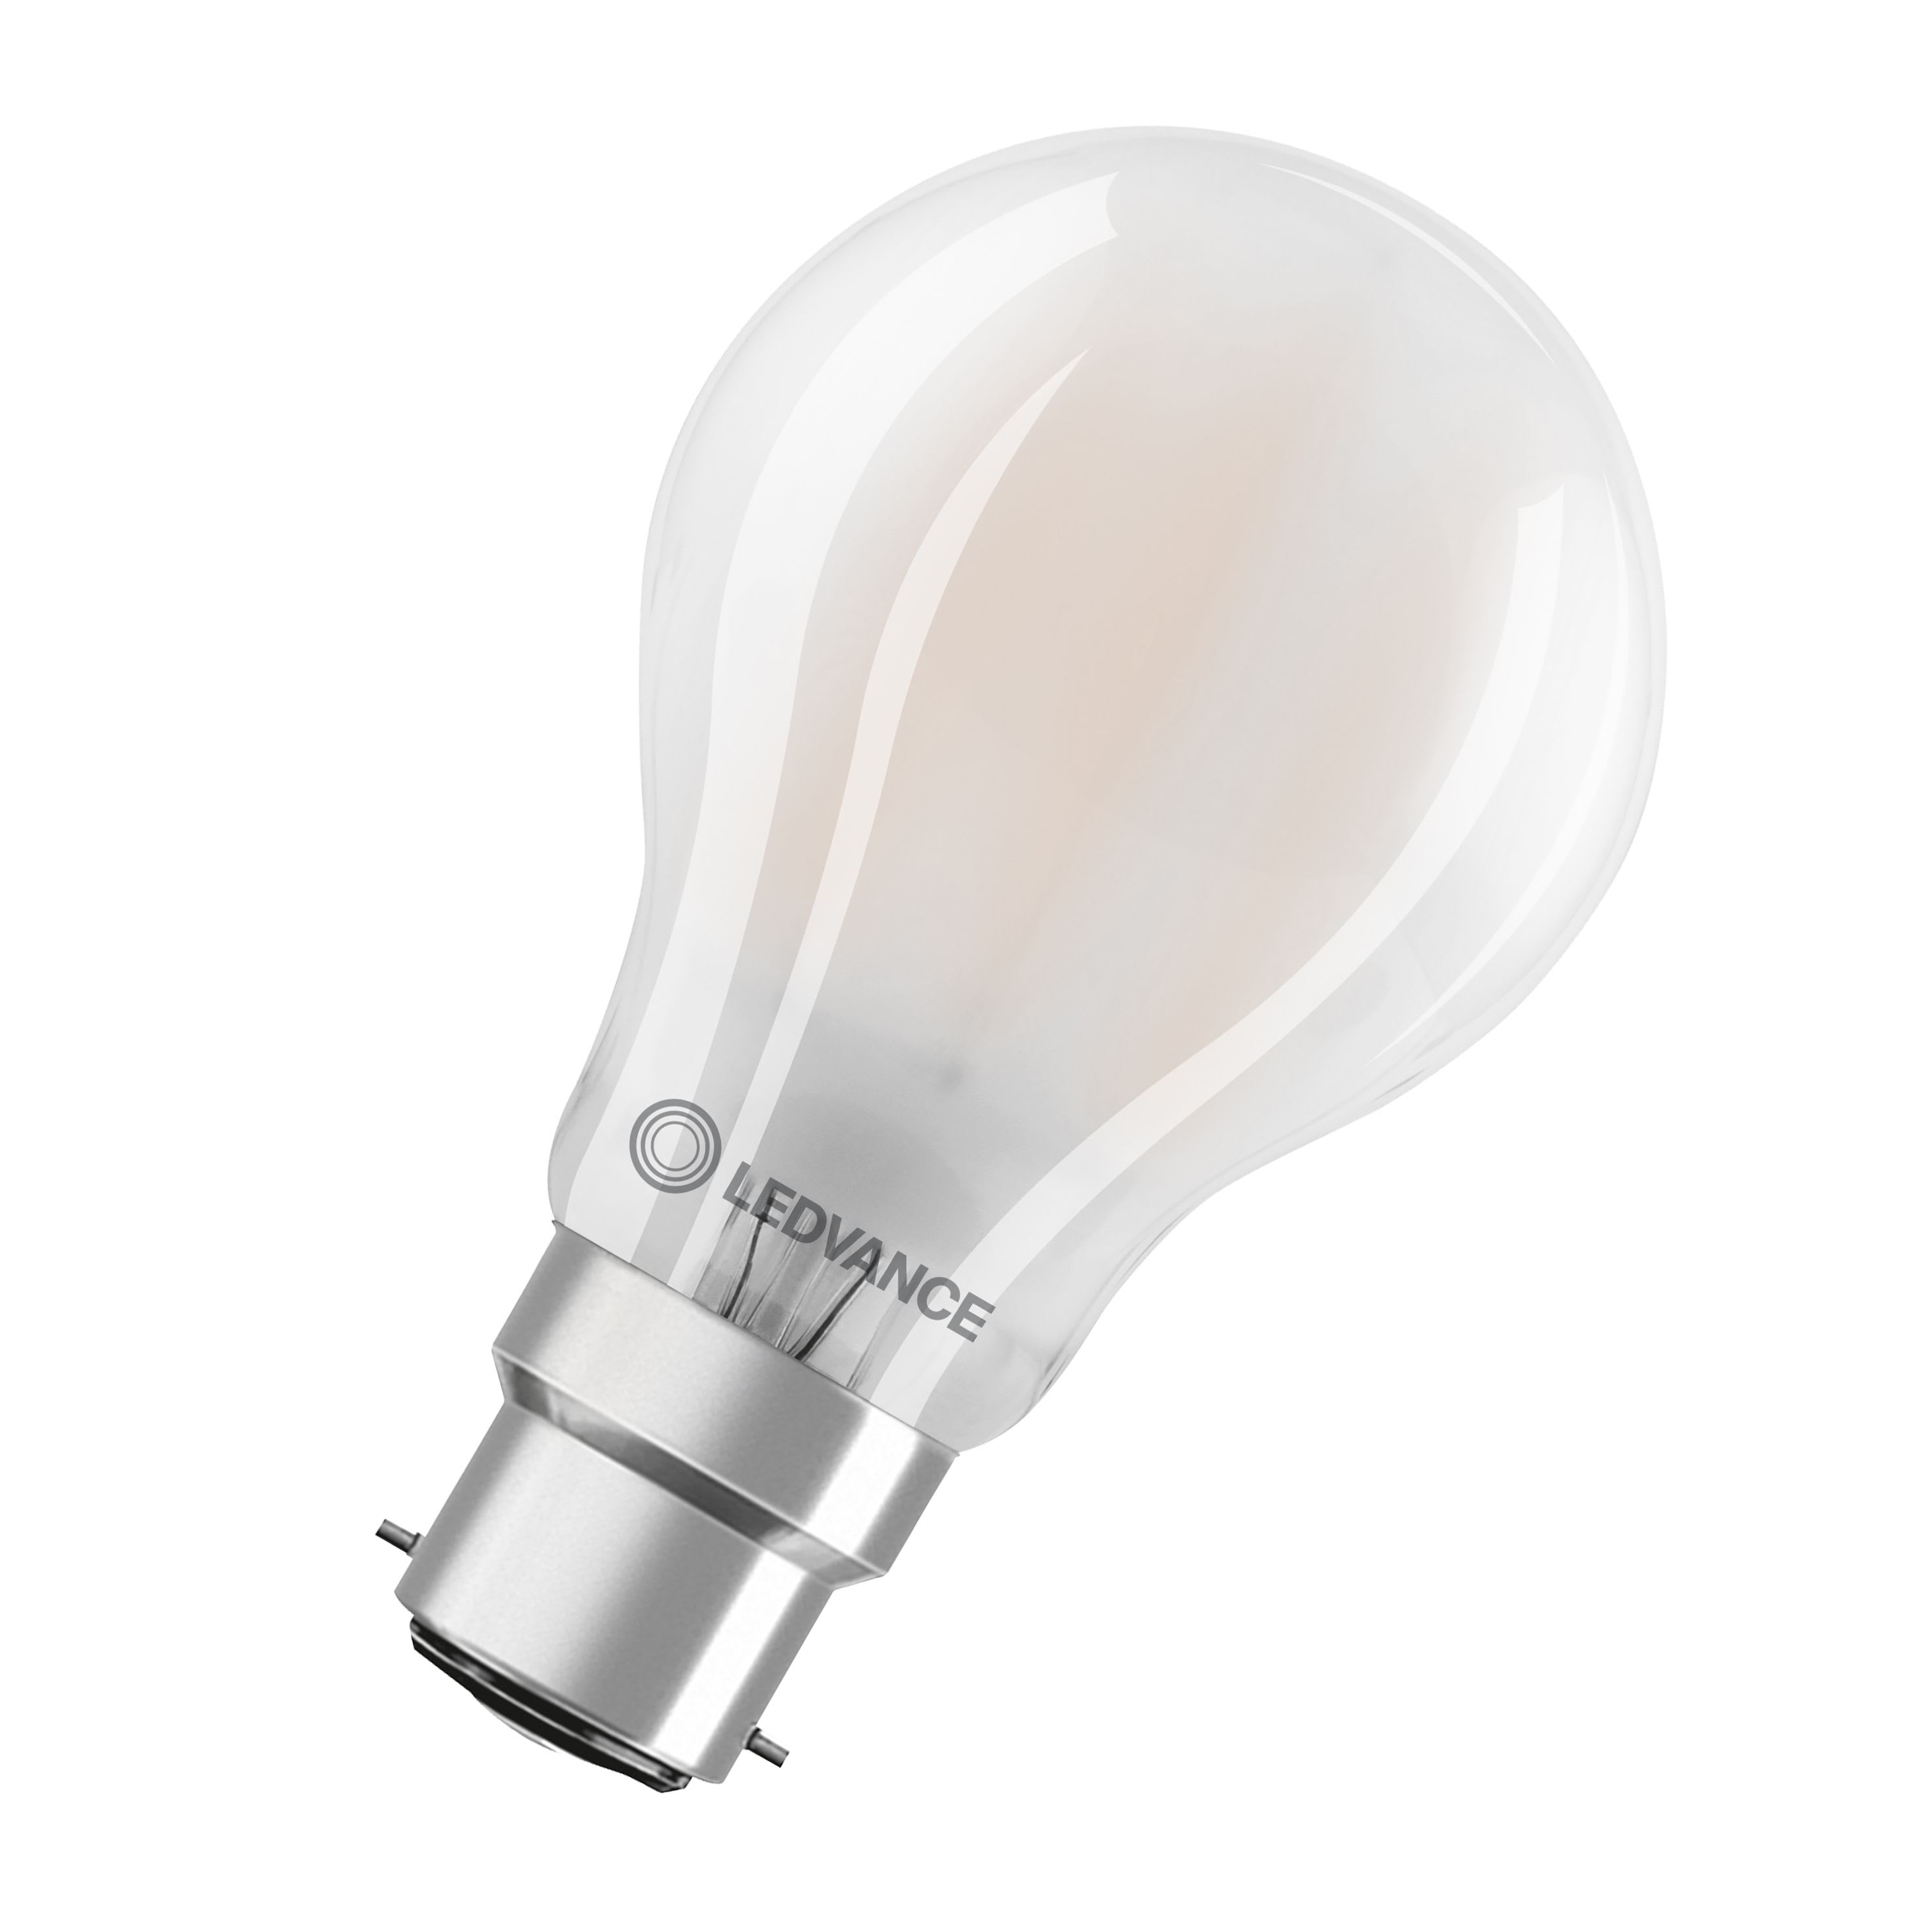 LED ampoule E27 Poire Dépolie 4.9W 470lm - 830 Blanc Chaud